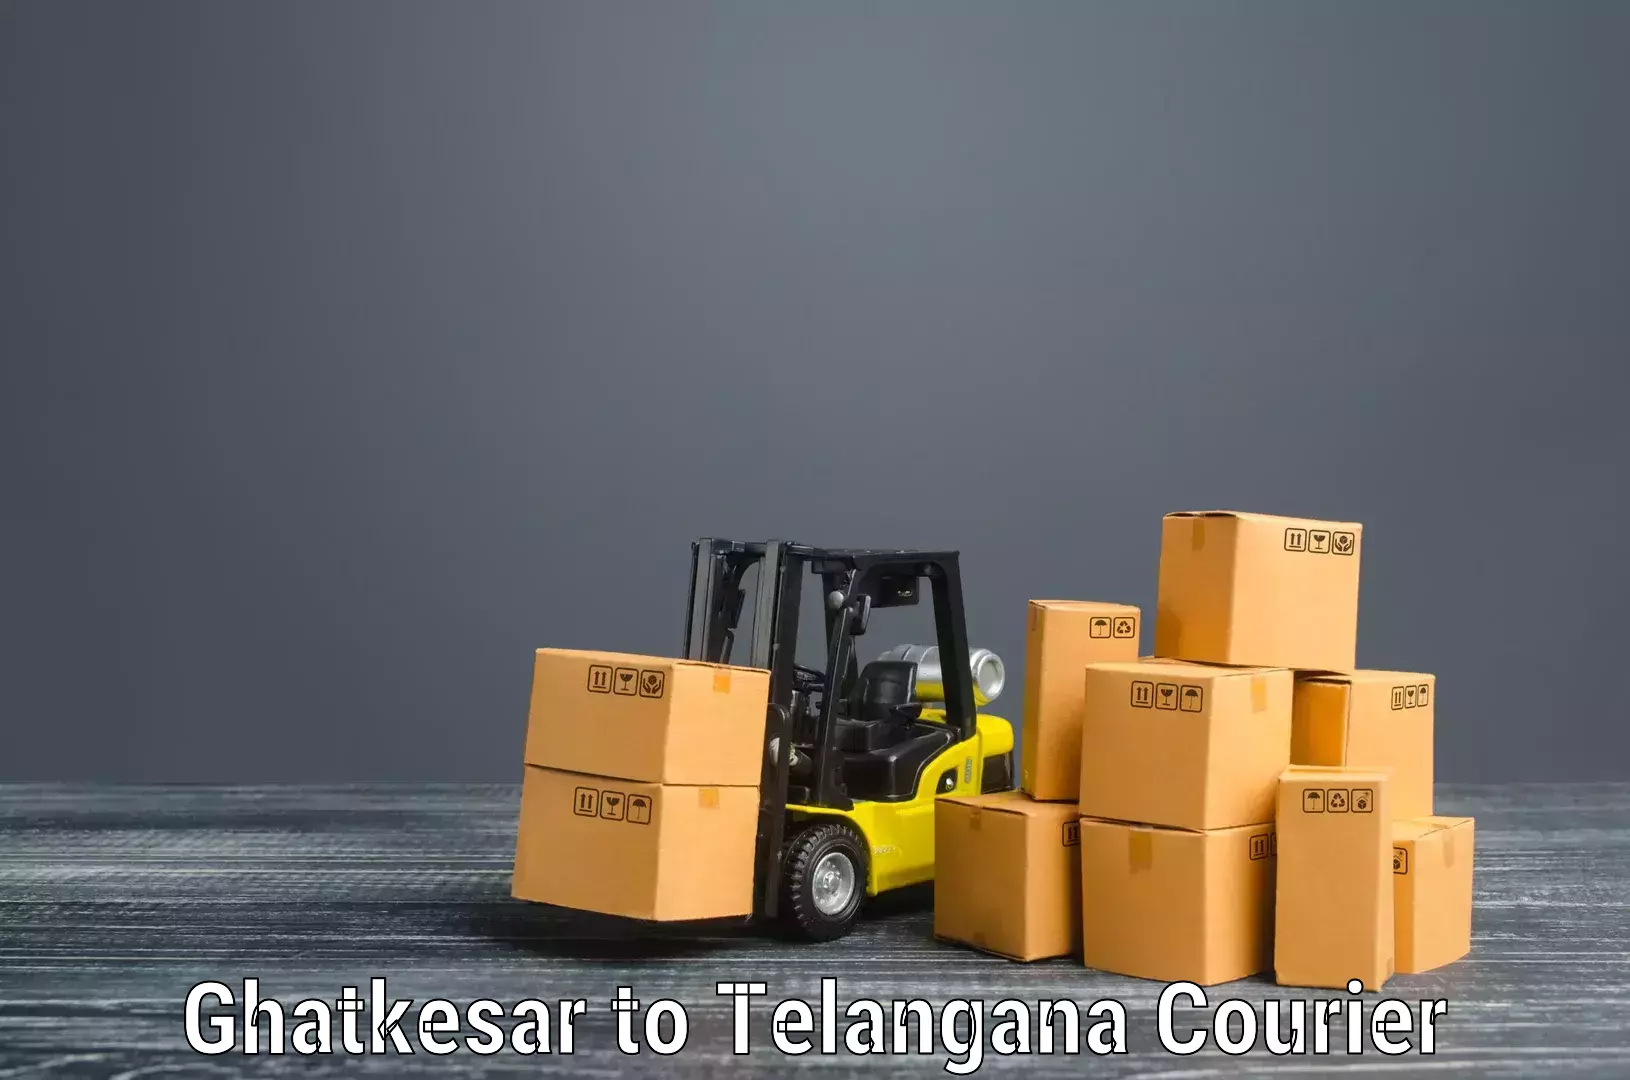 Furniture transport services Ghatkesar to Medchal